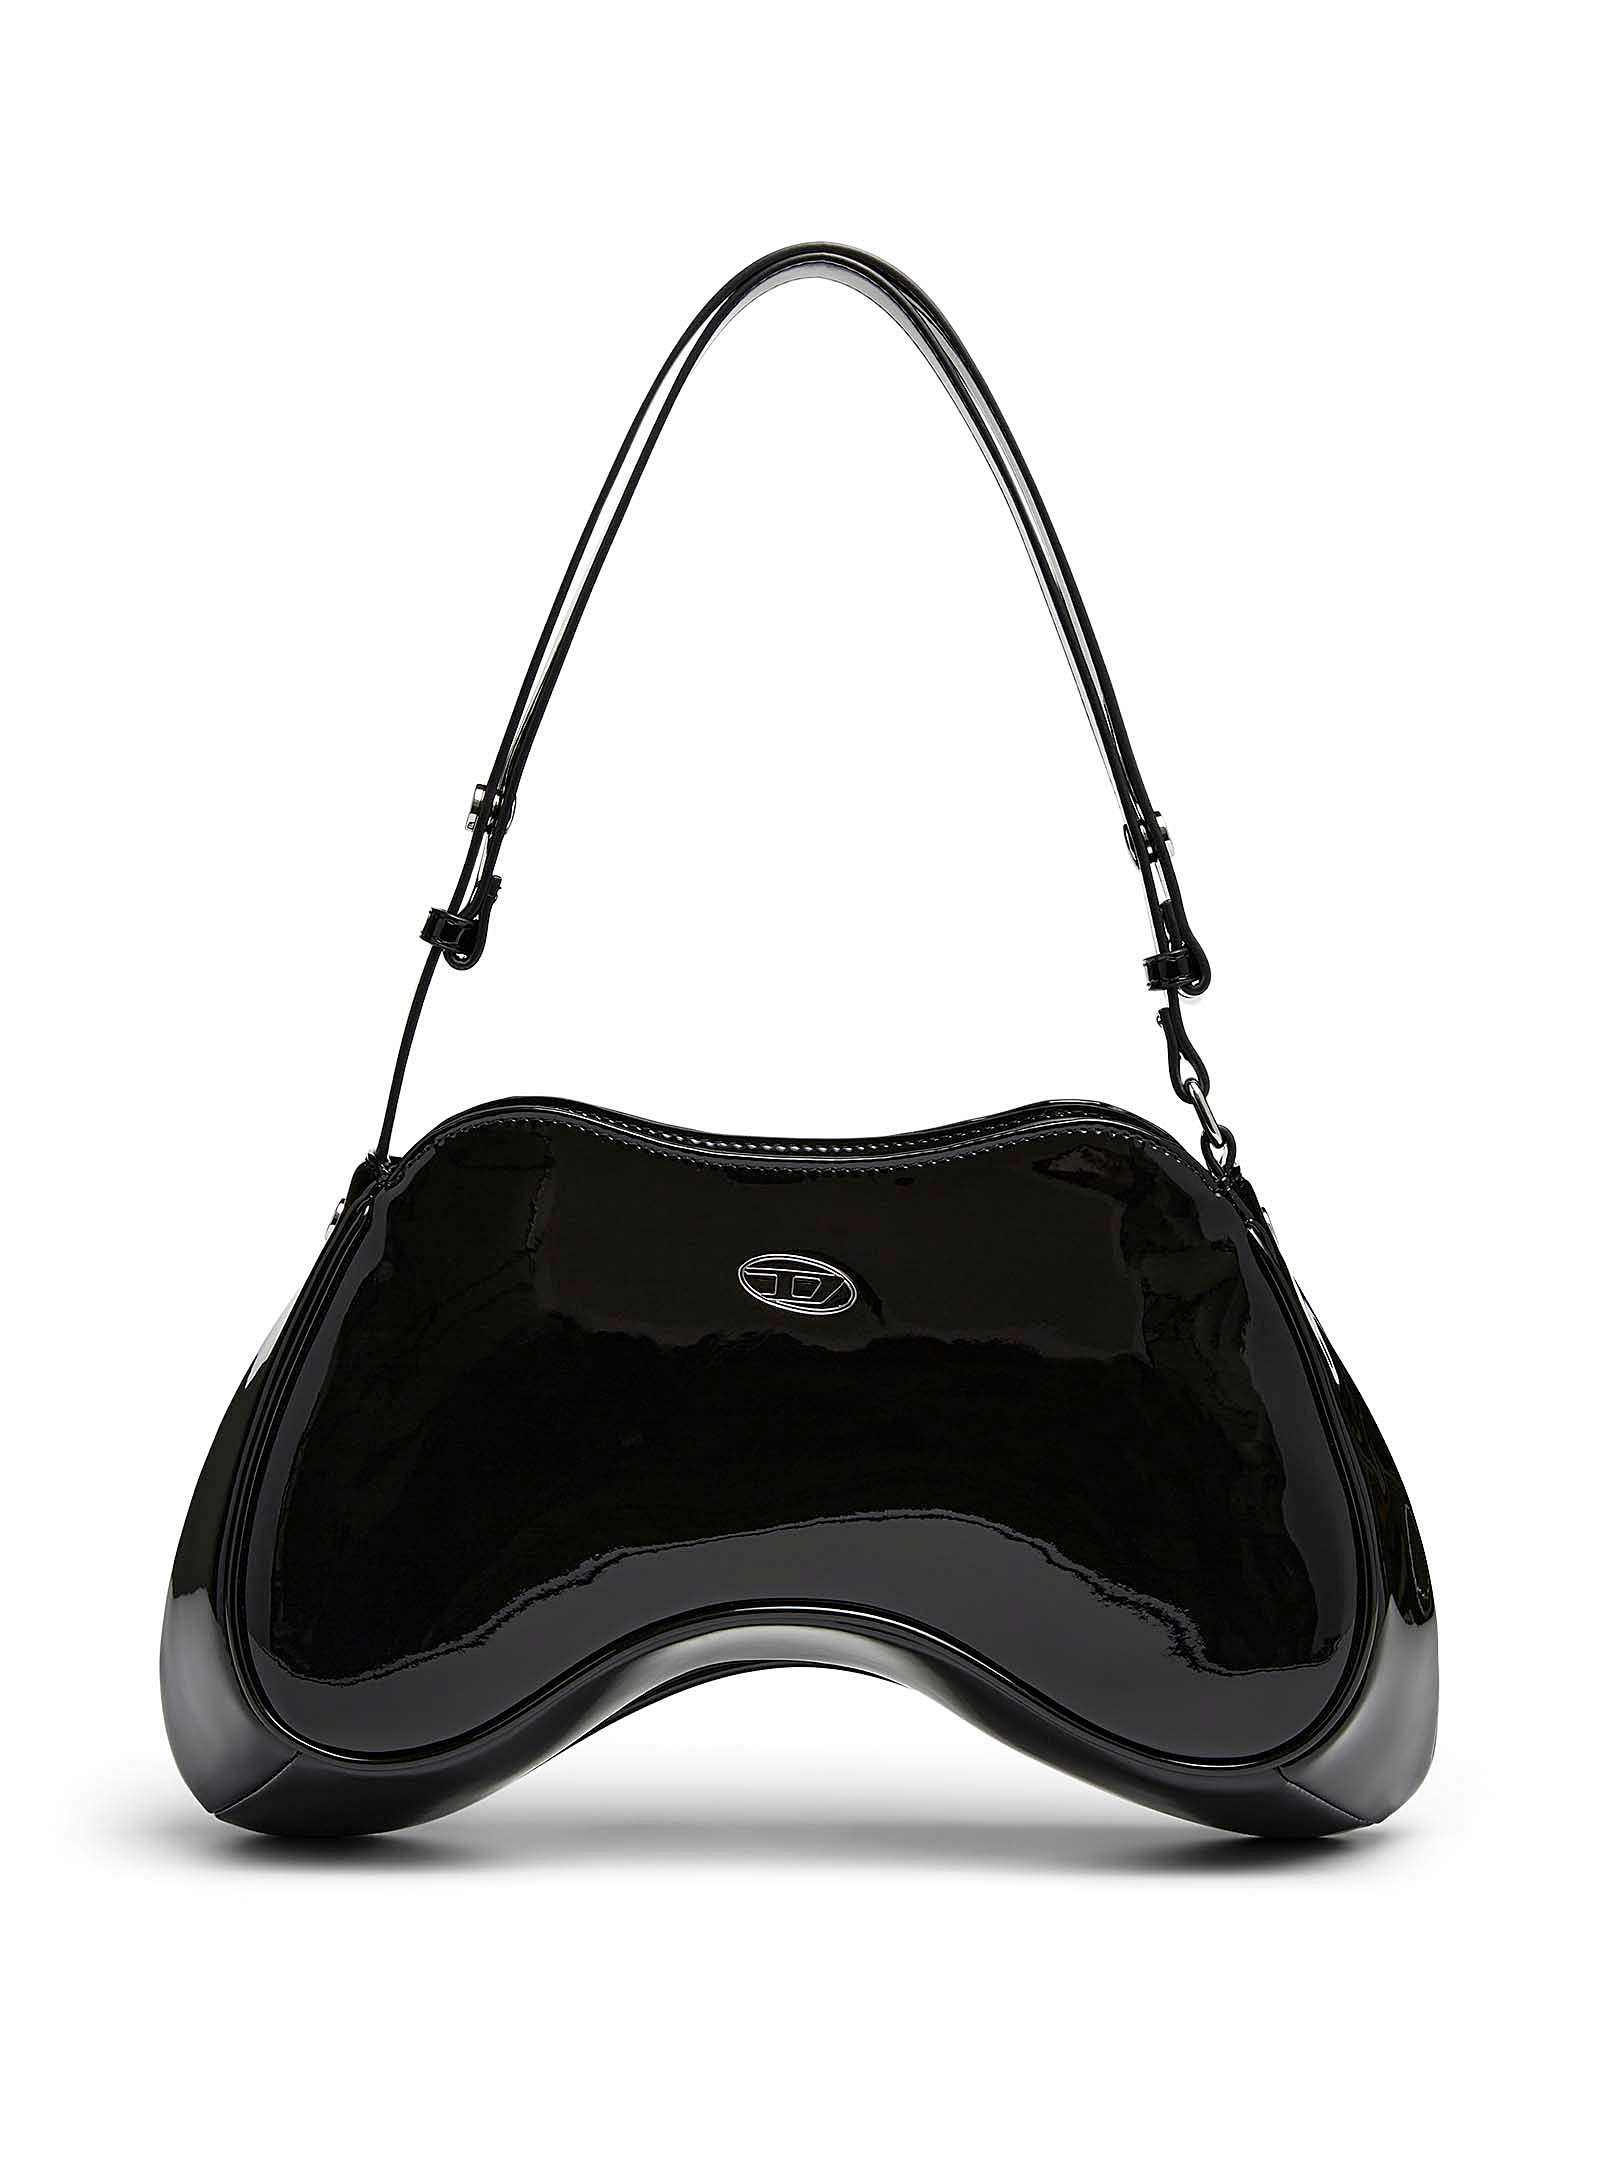 Diesel - Women's Play handbag